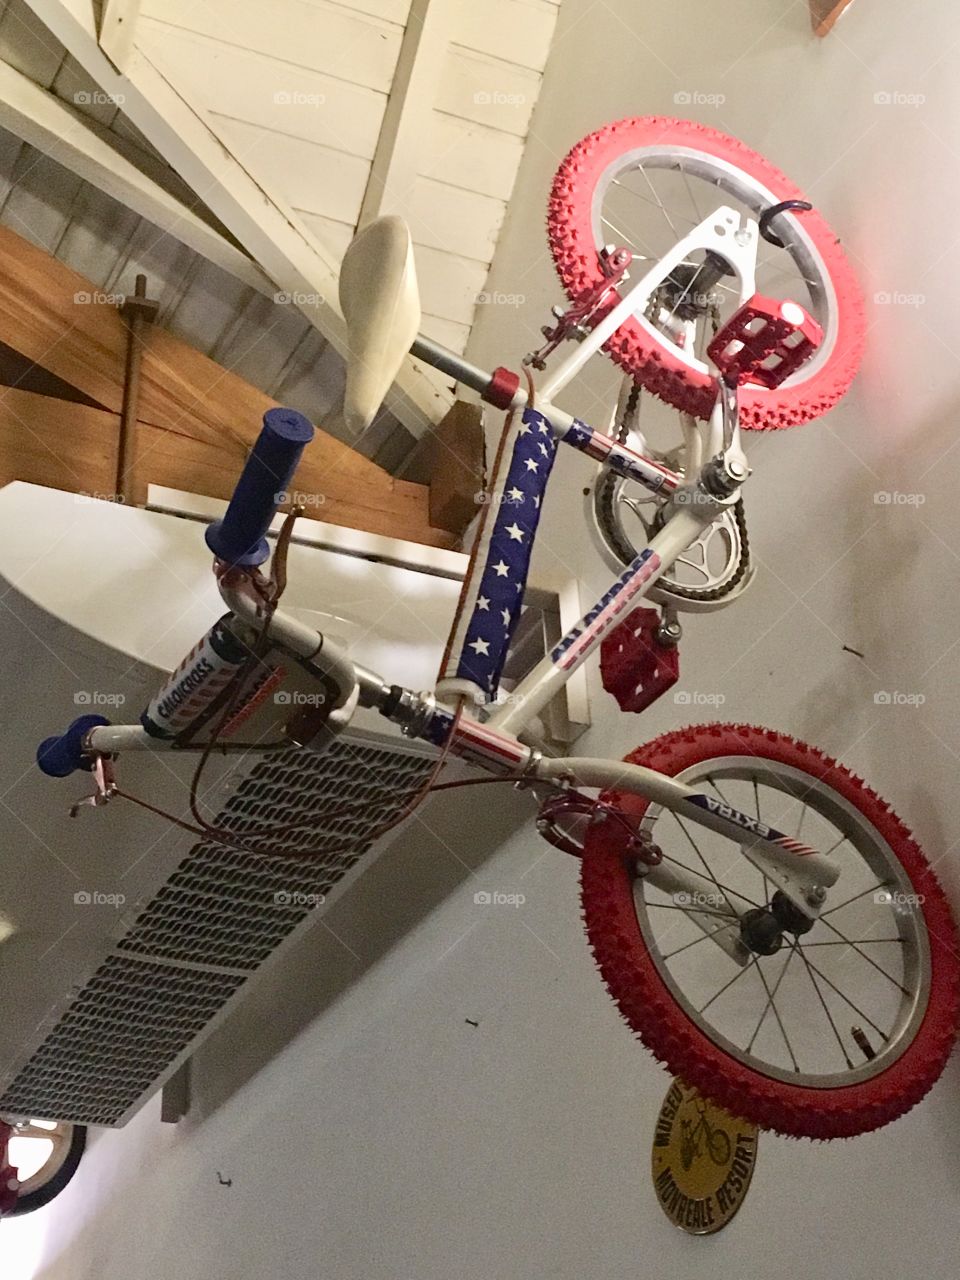 Esse modelo de bicicleta (BMX Cross) era o sonho de qualquer criança dos anos 80! Esse cara a colocou uma delas na parede como um troféu!